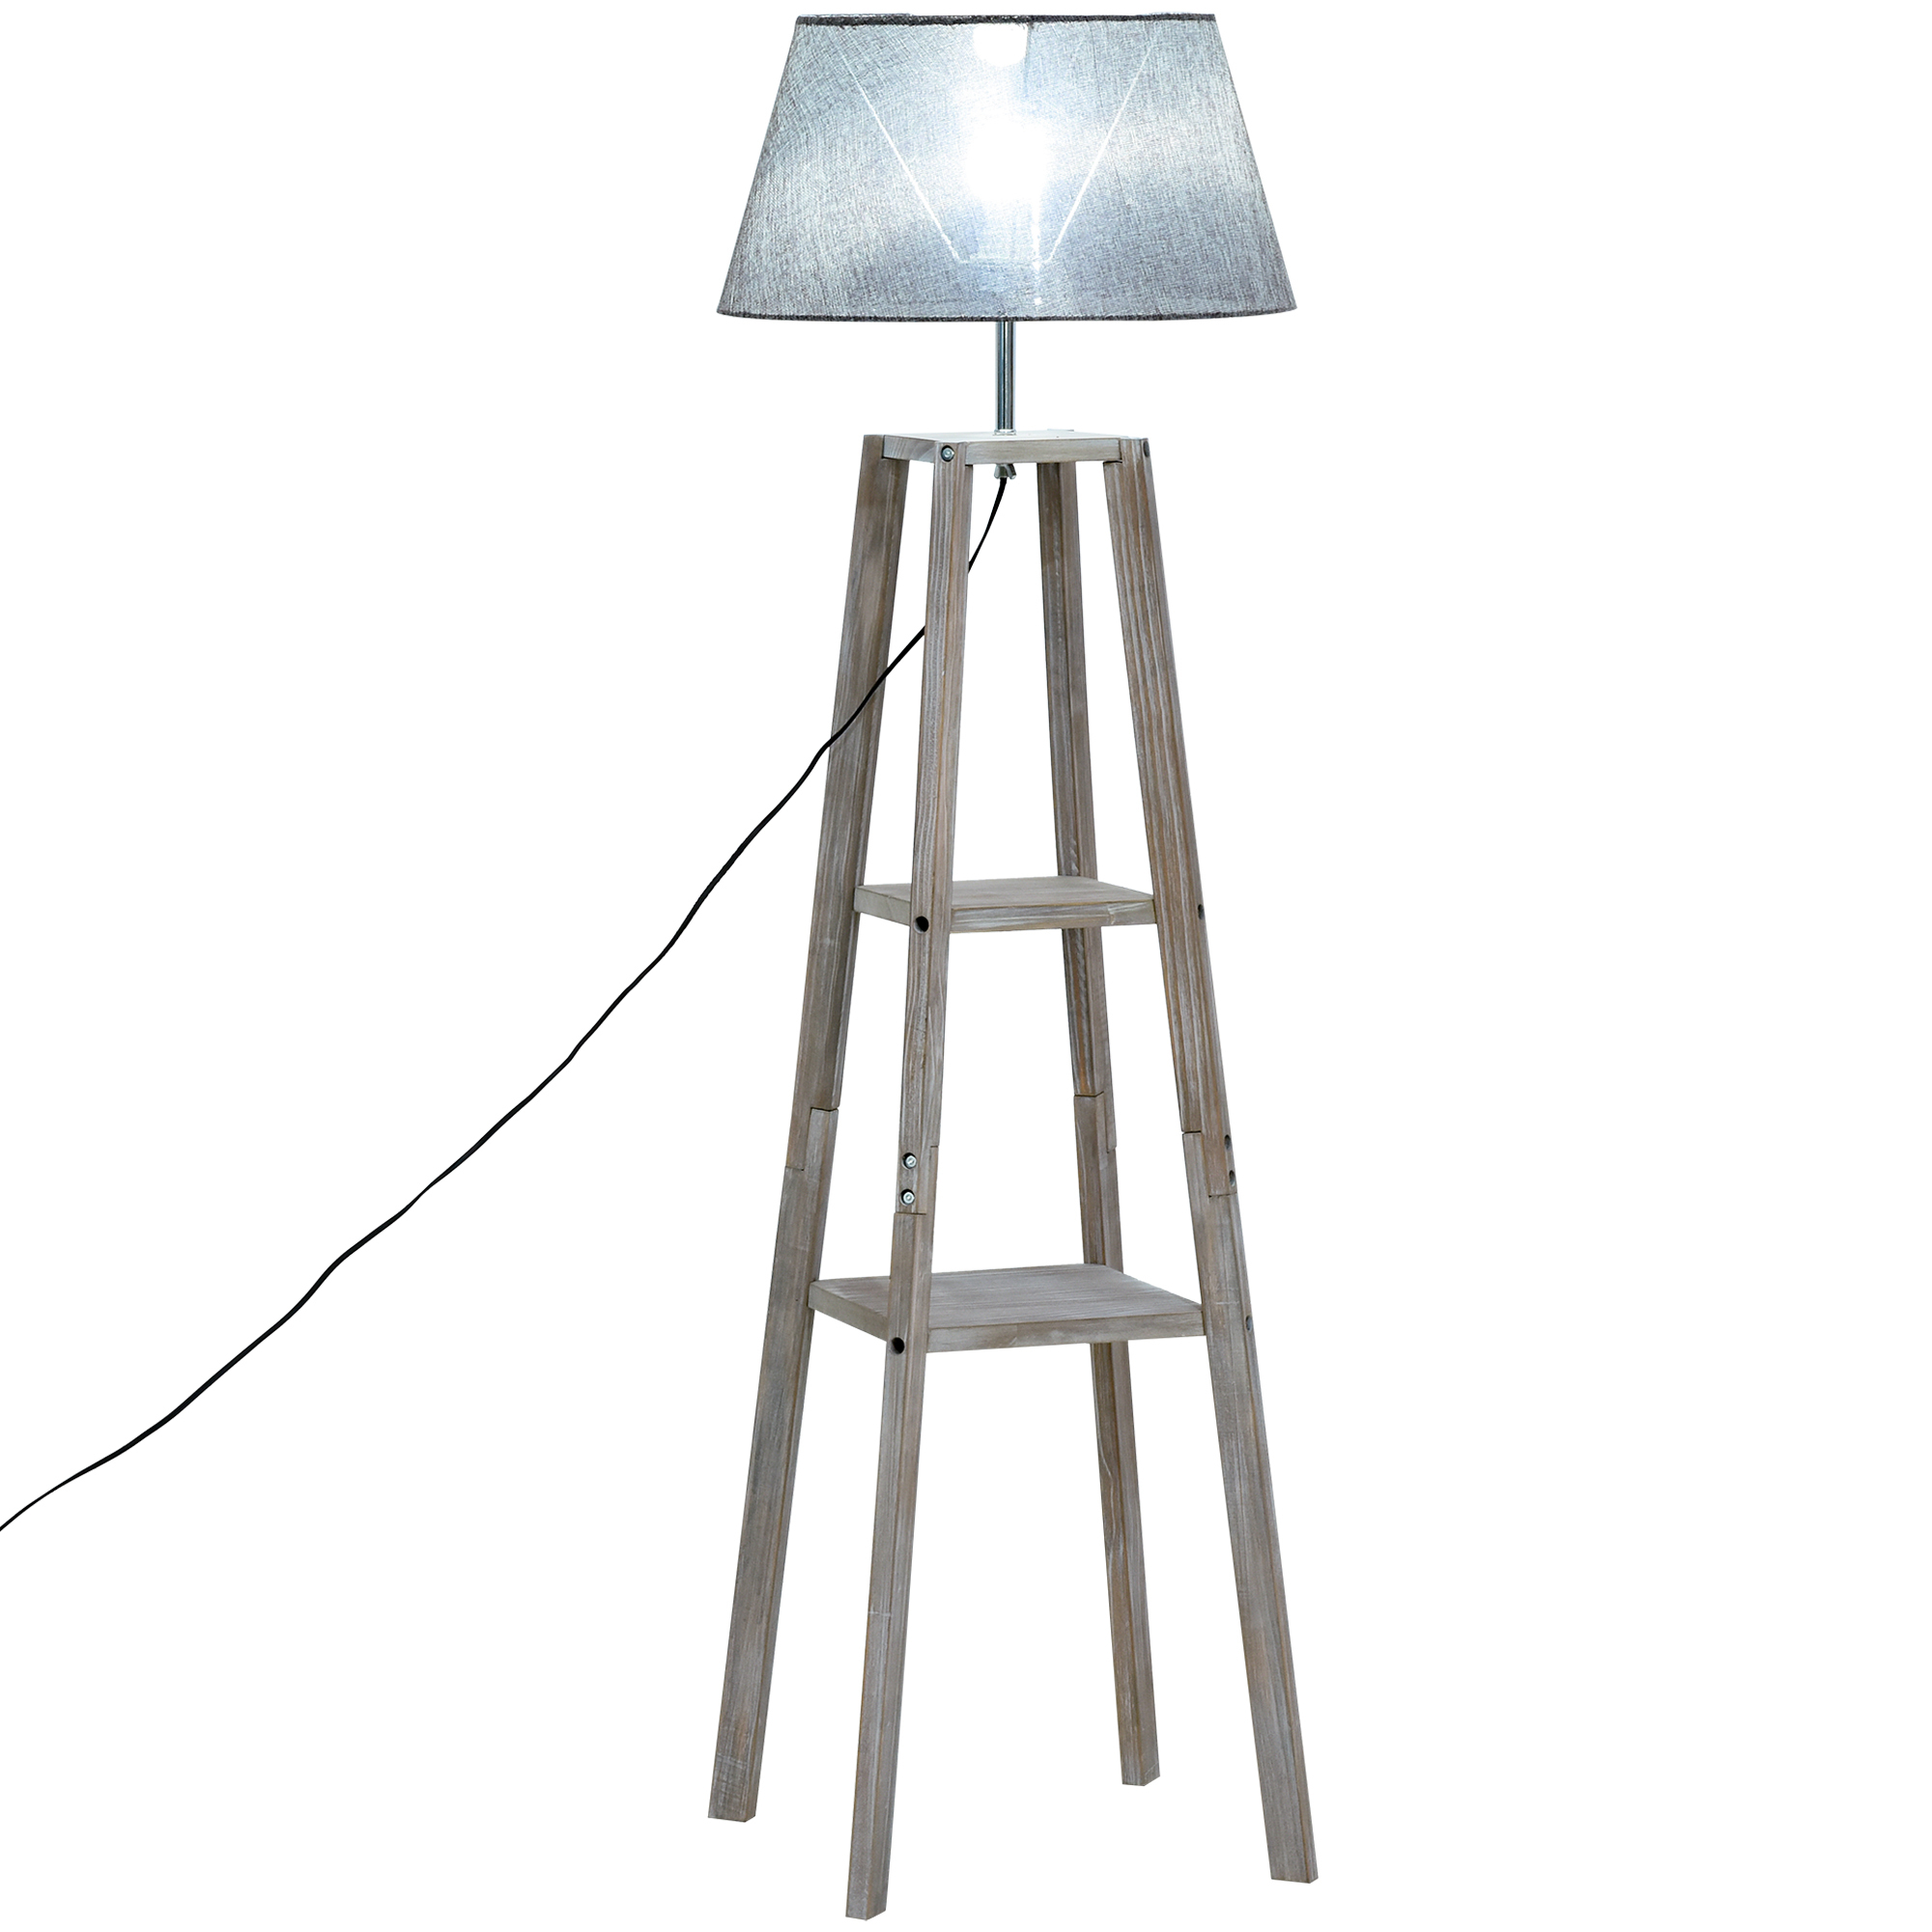 Stehlampe mit Regal Standleuchte Skandinavische Lampe Kiefer Natur Grau